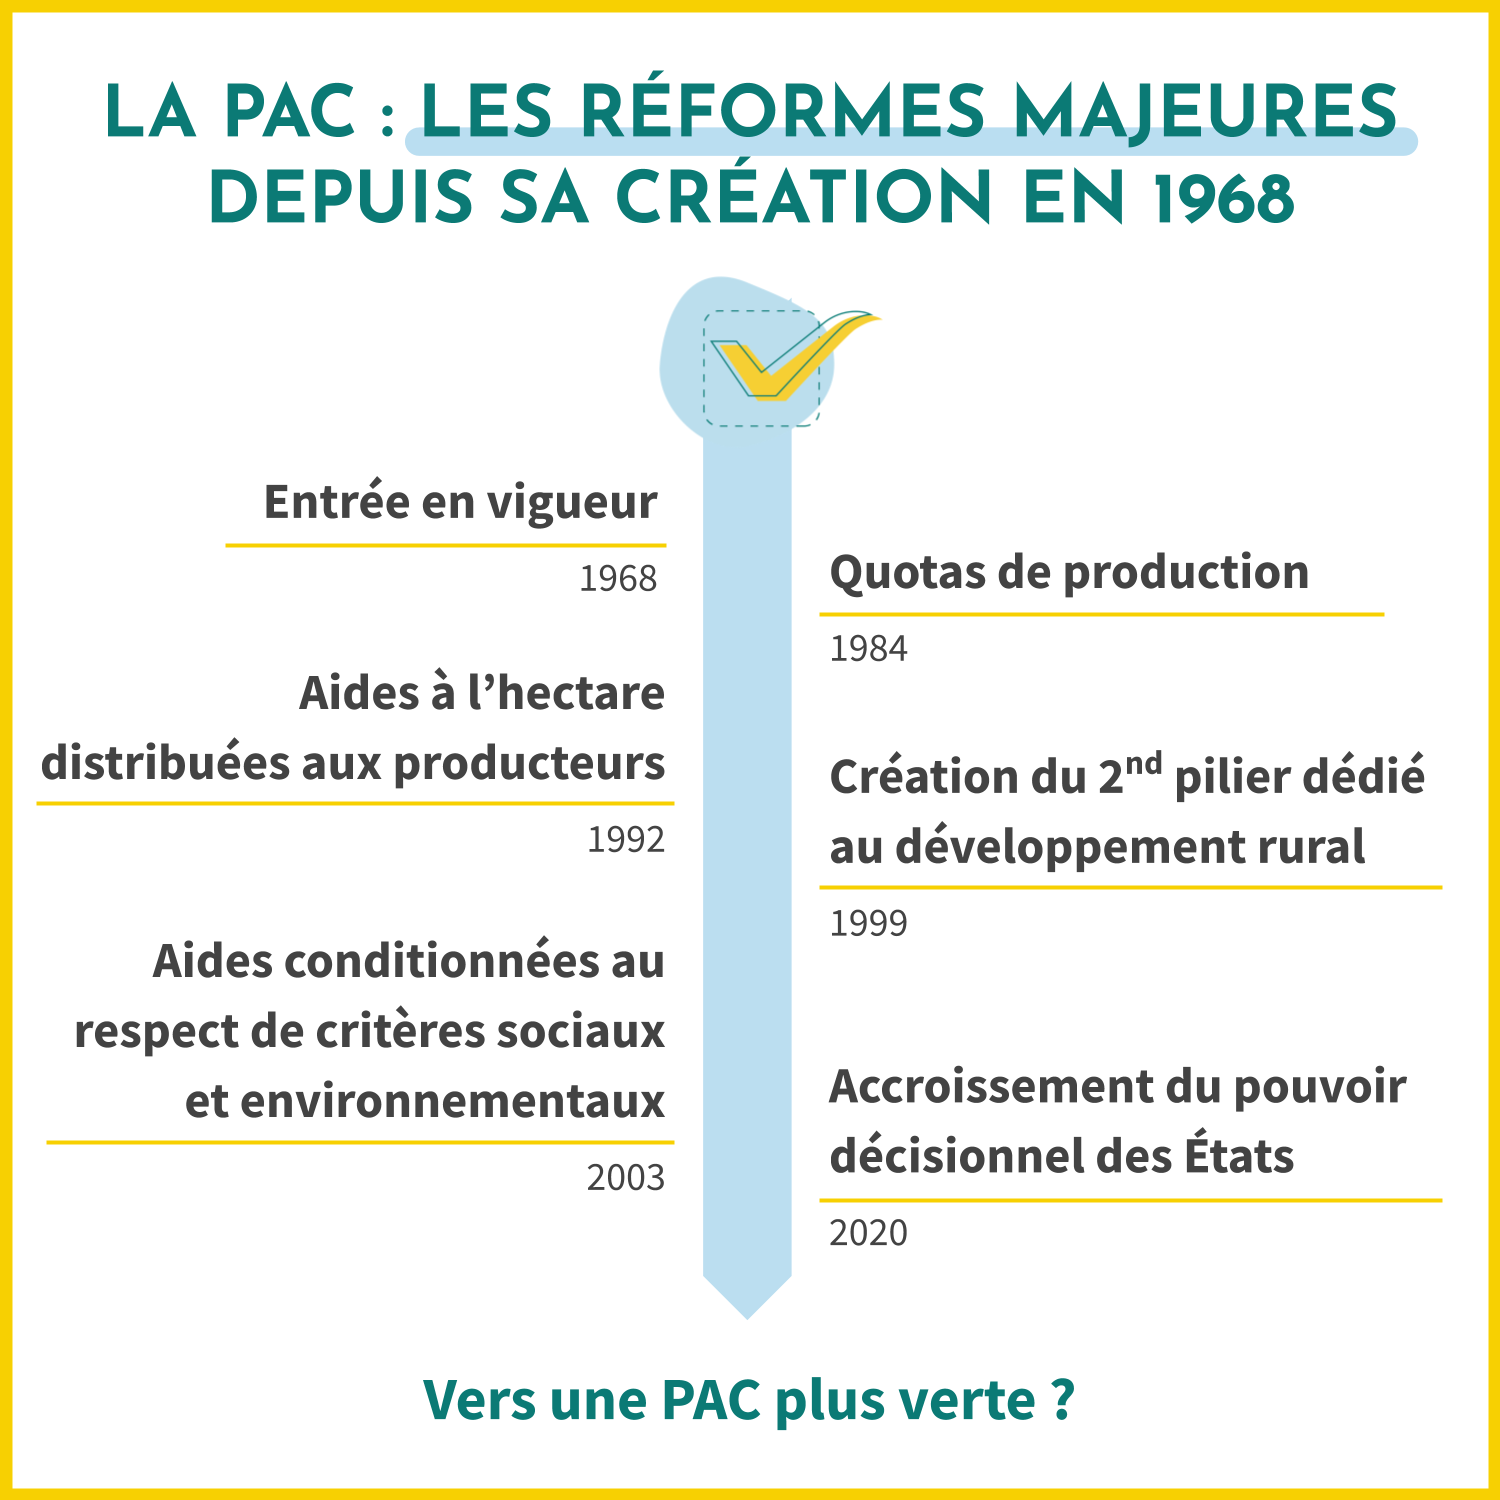 Depuis sa création en 1968, la PAC (ou Politique Agricole Commune) a mis en place des réformes majeures. De son entrée en vigueur à la mise en place des quotas de productions en passant pas les aides conditionnées au respect des critères sociaux et environnementaux. 